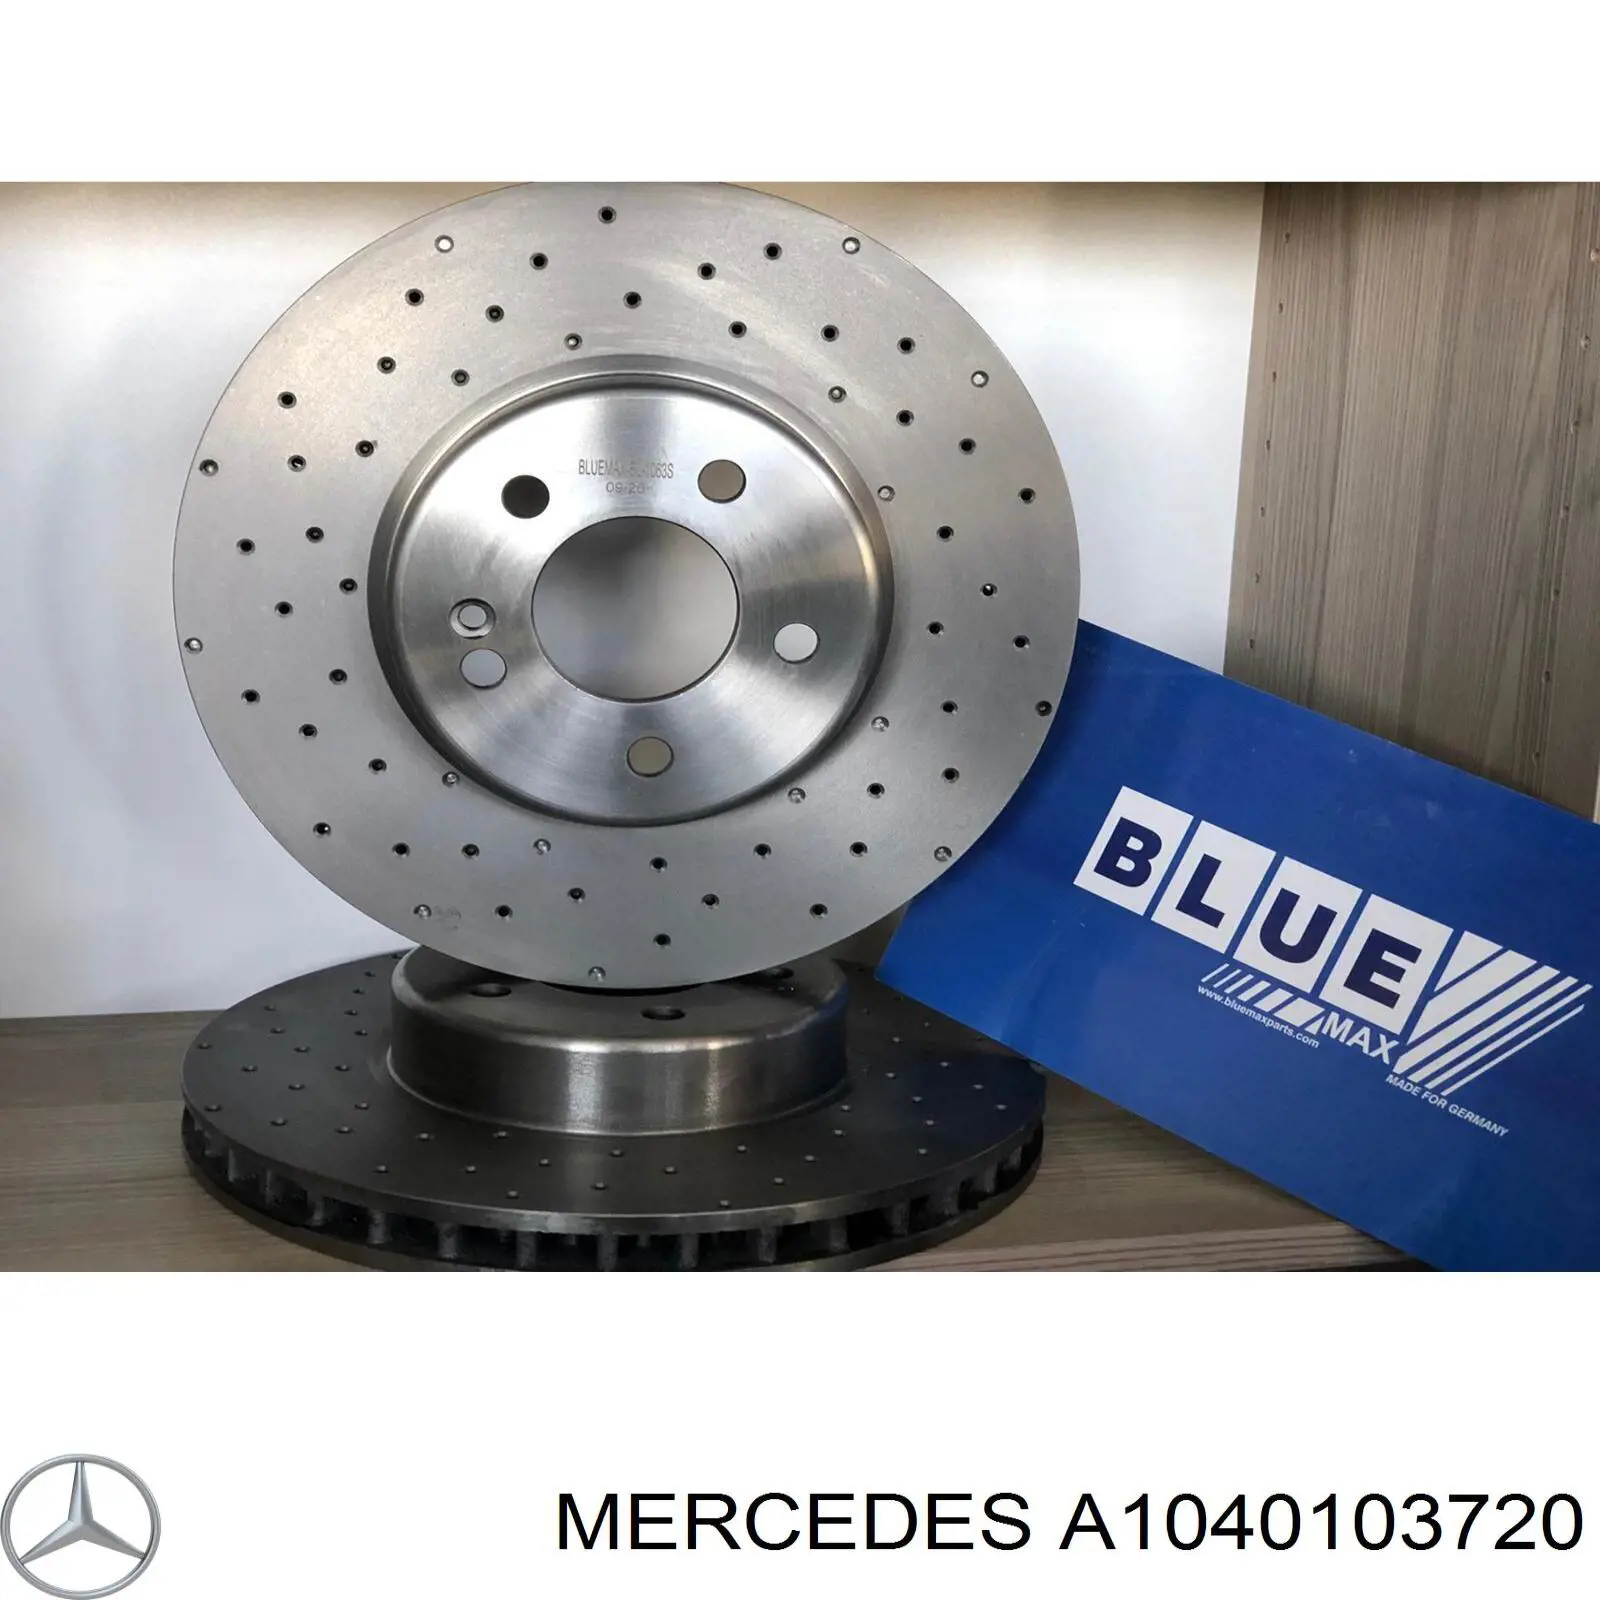 A1040103720 Mercedes juego de juntas de motor, completo, superior